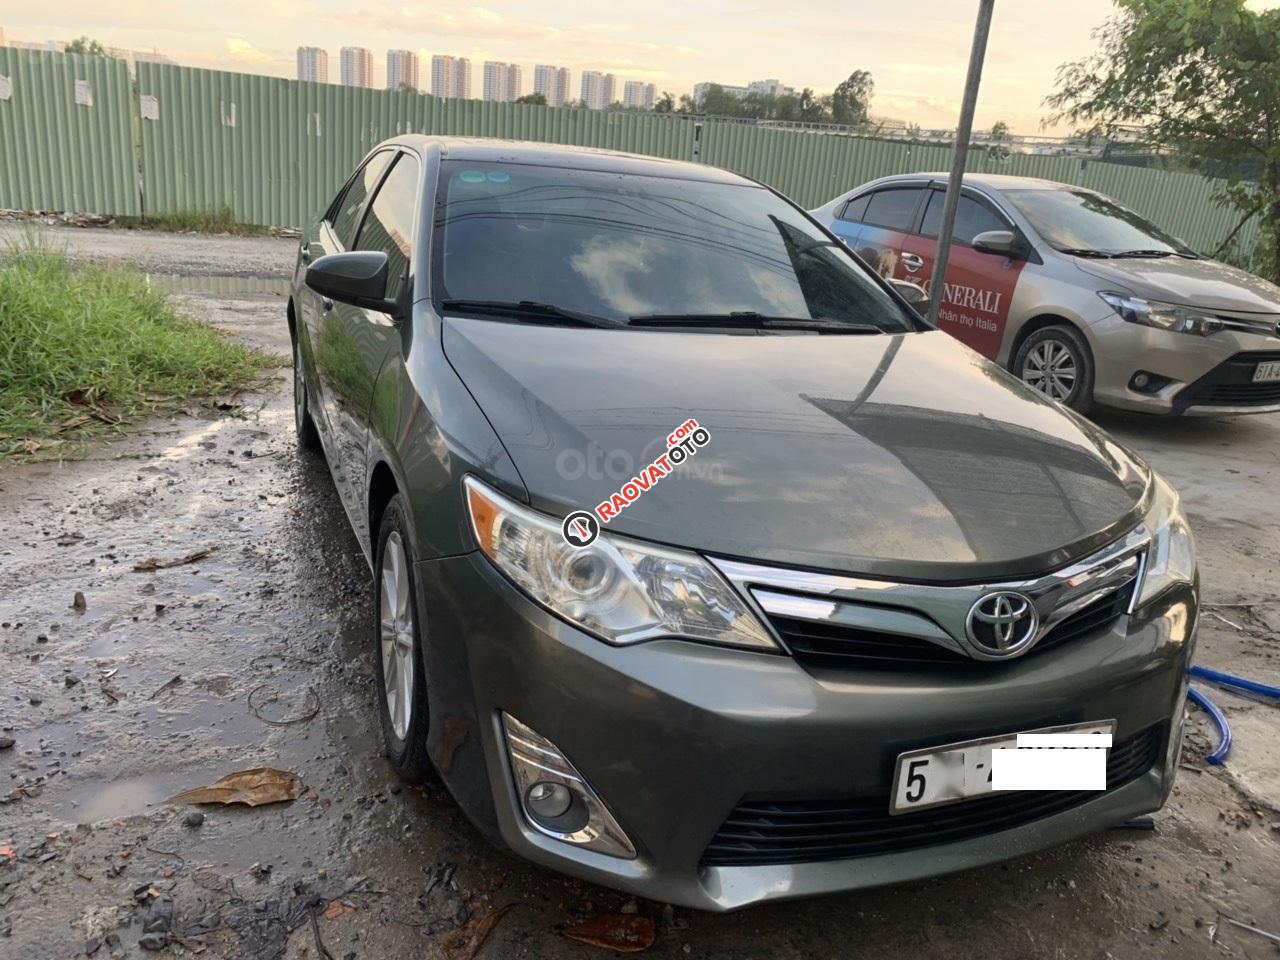 Cần bán xe Toyota Camry XLE đời 2014, màu xám (ghi), nhập khẩu, giá 380tr-4